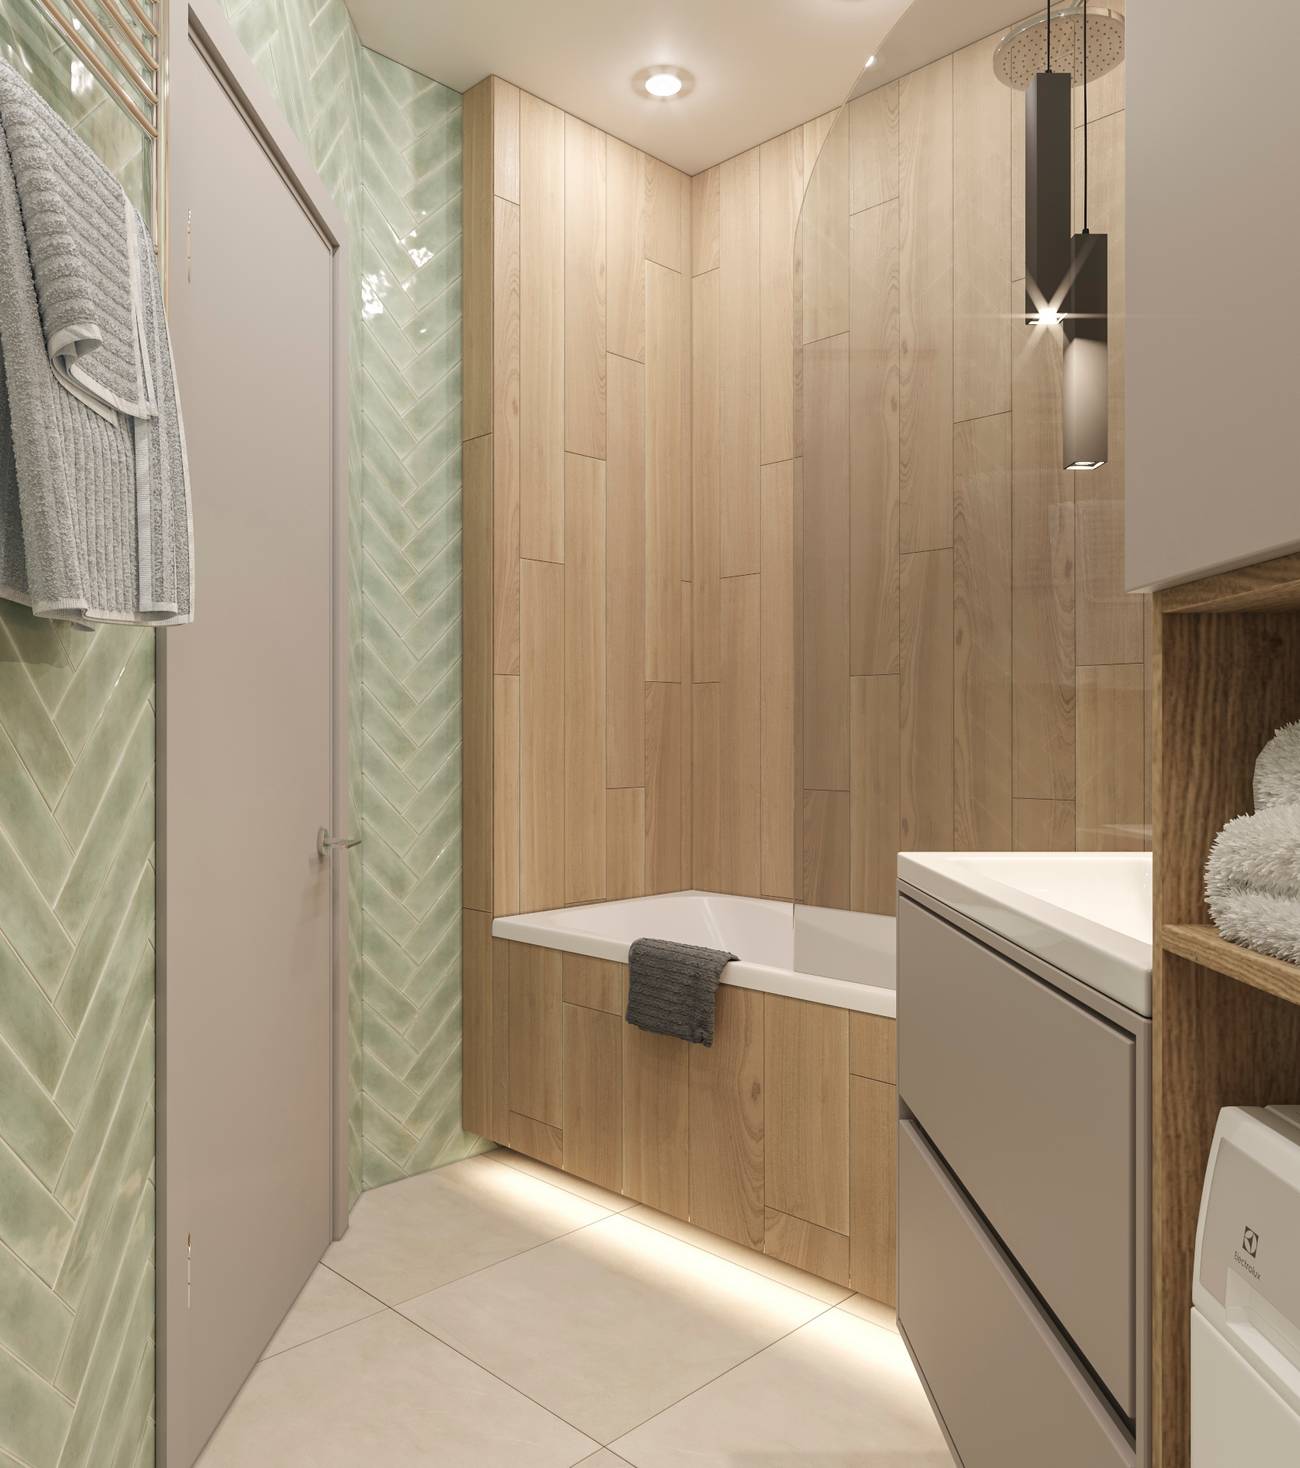 Bồn tắm ốp gỗ được bố trí ngay góc phòng, phân vùng với nhà vệ sinh bằng cửa kính trong suốt cùng hệ thống đèn chiếu sáng kết hợp trang trí nhờ kiểu dáng hiện đại, đẹp mắt.